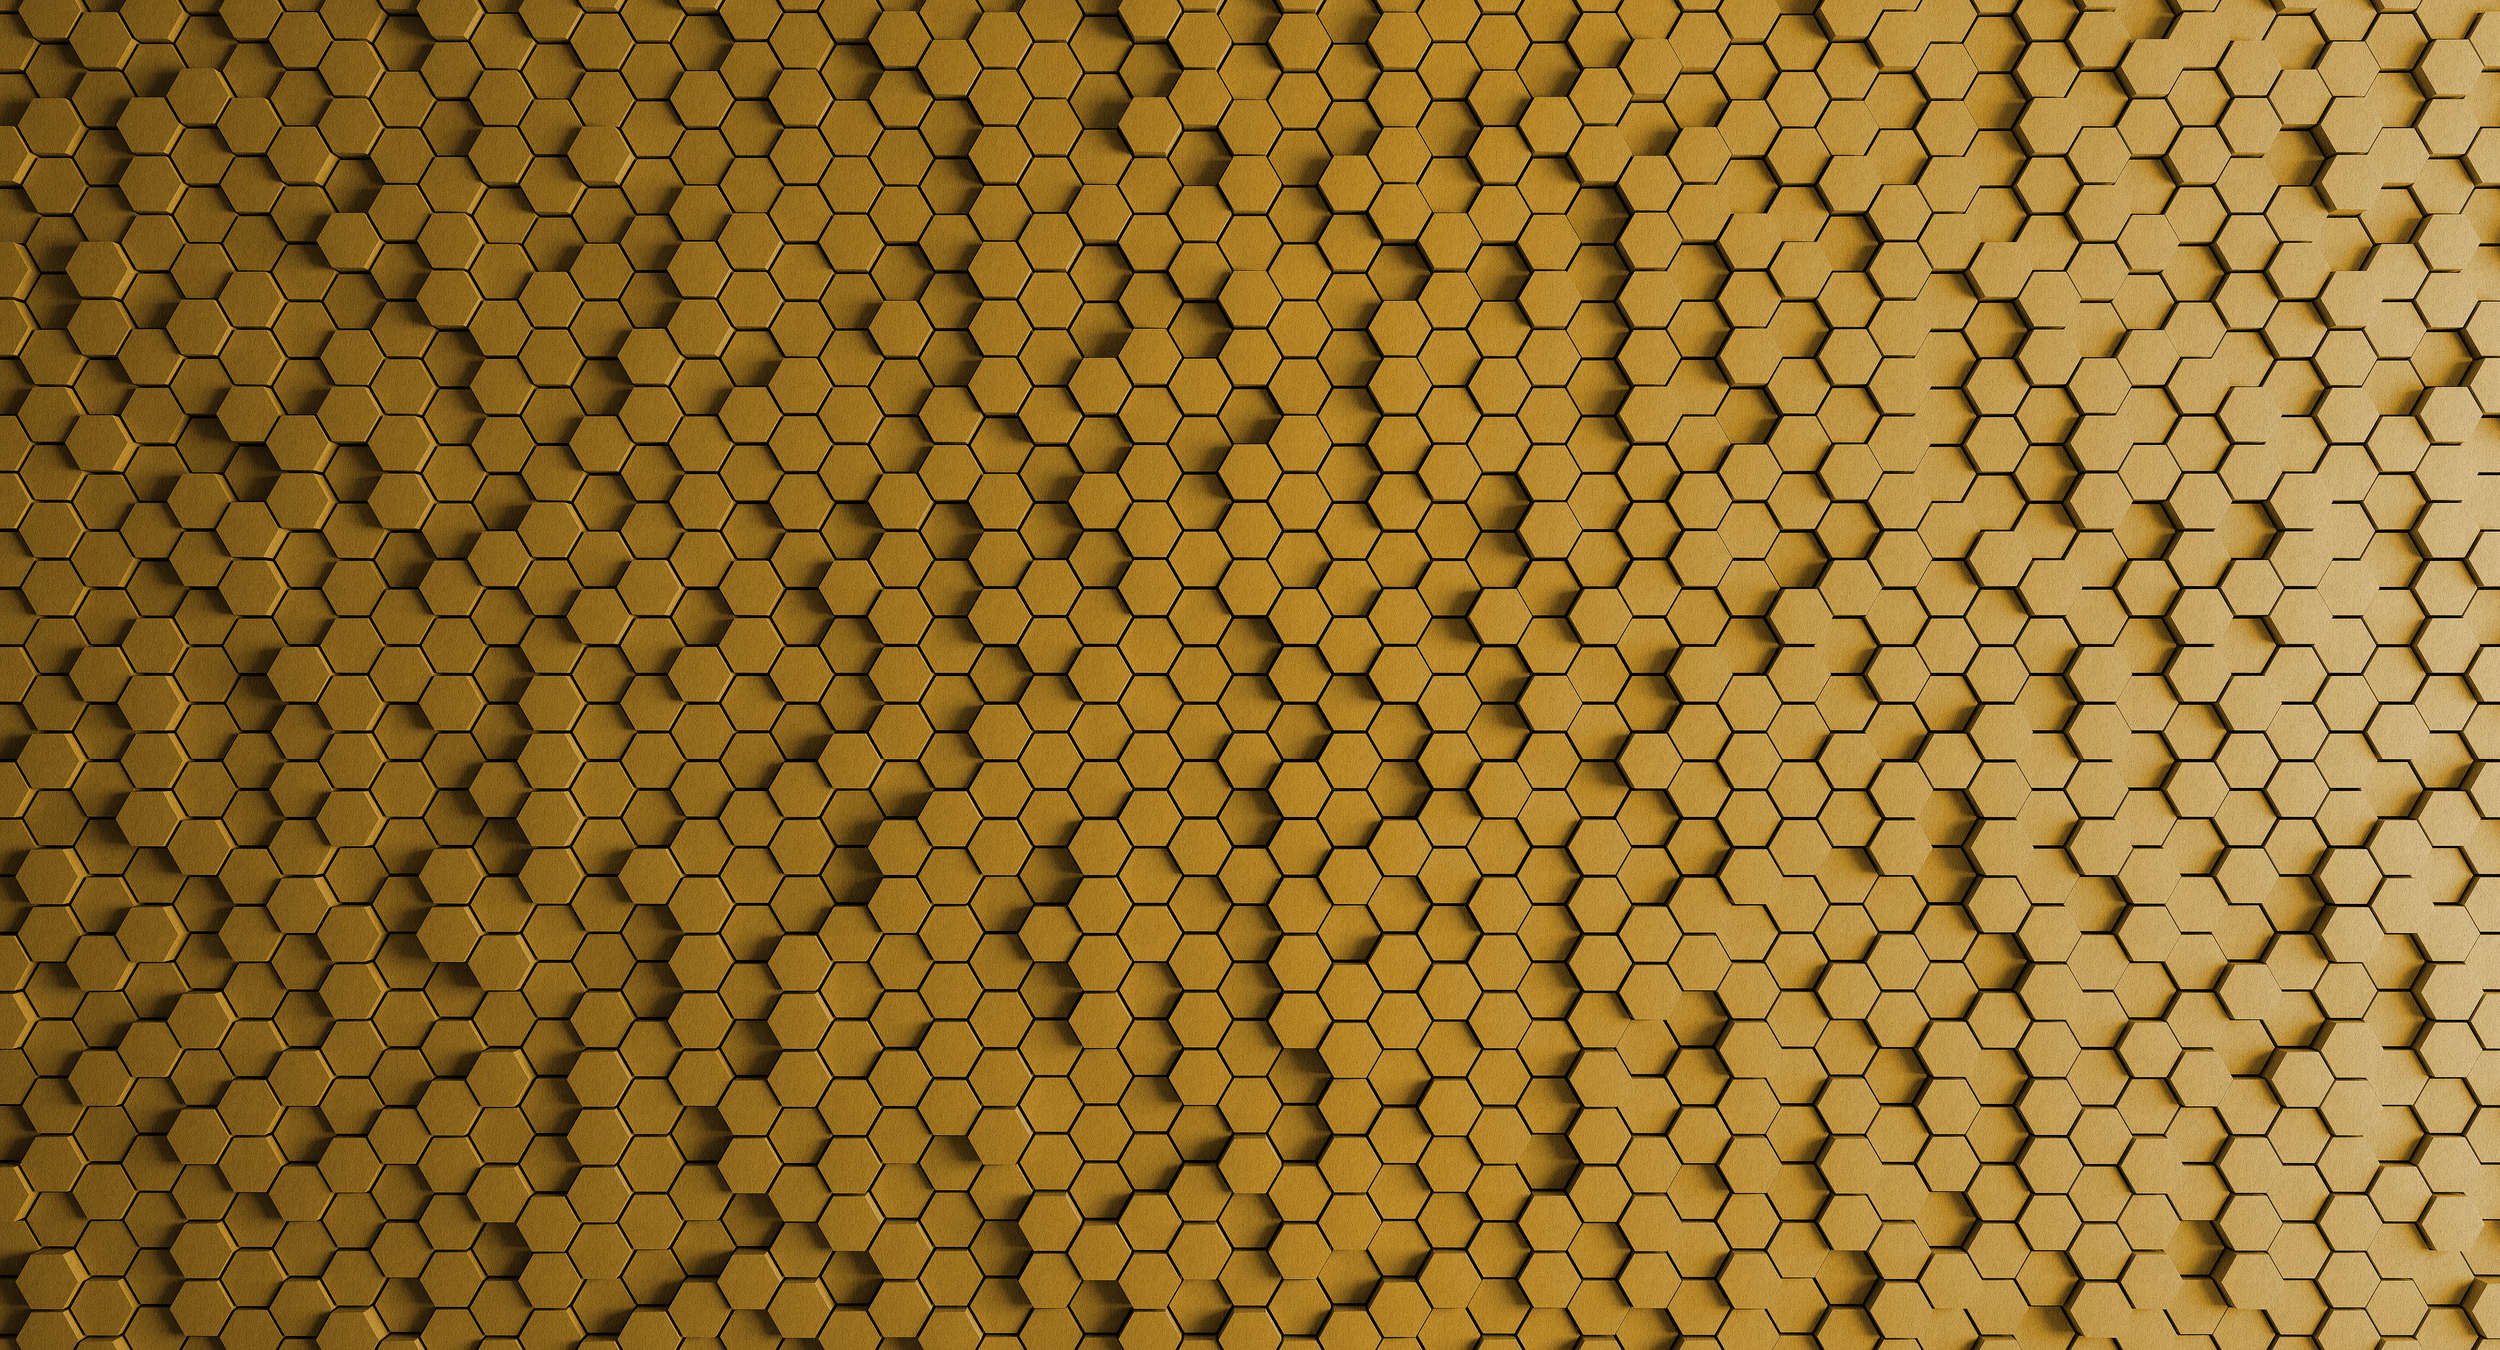             Honeycomb 1 - Papier peint 3D nid d'abeille jaune structure feutrée - jaune, noir | Premium intissé lisse
        